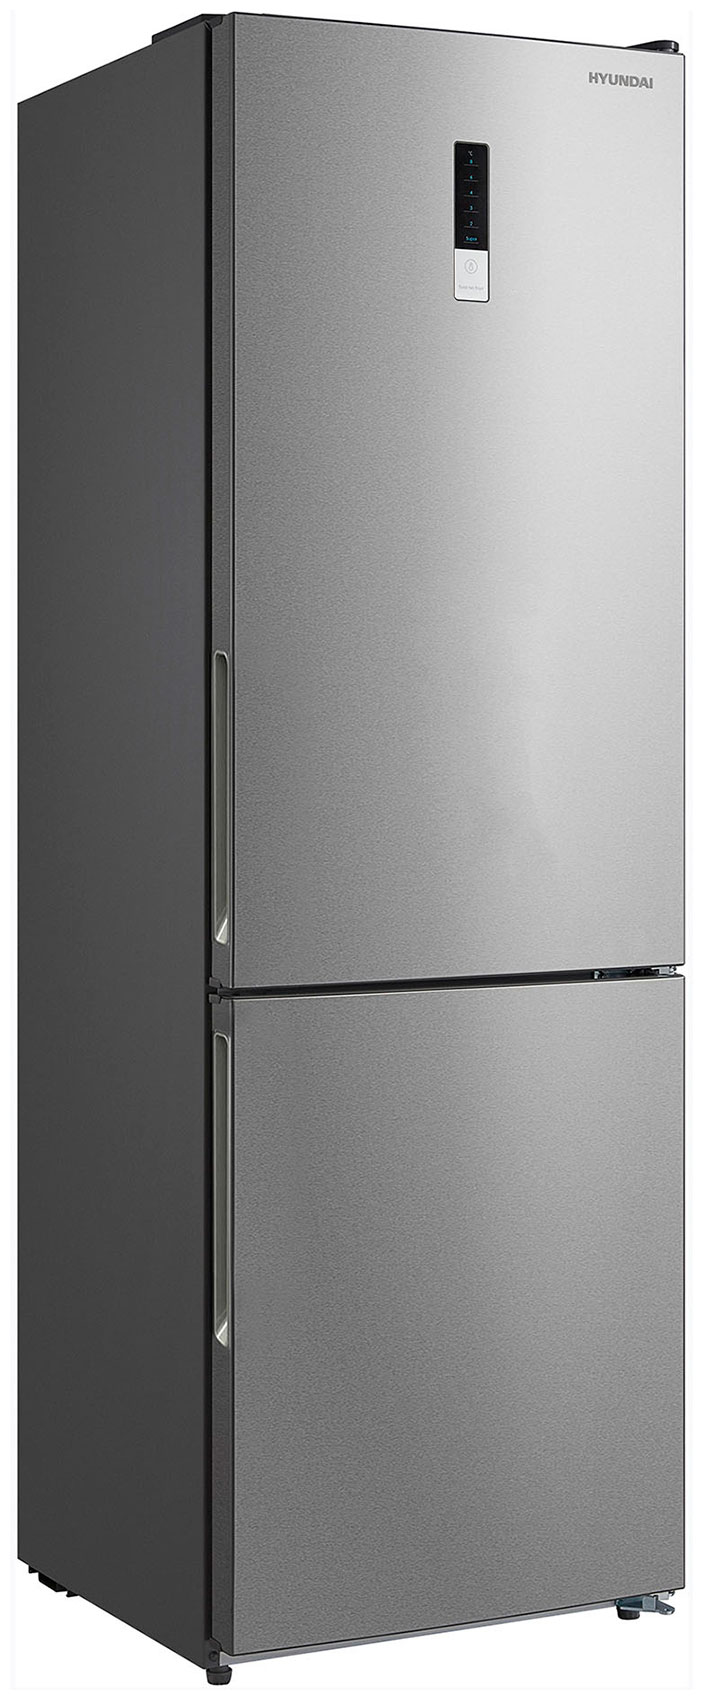 Двухкамерный холодильник Hyundai CC3095FIX нержавеющая сталь двухкамерный холодильник hyundai cc3593fwt белый